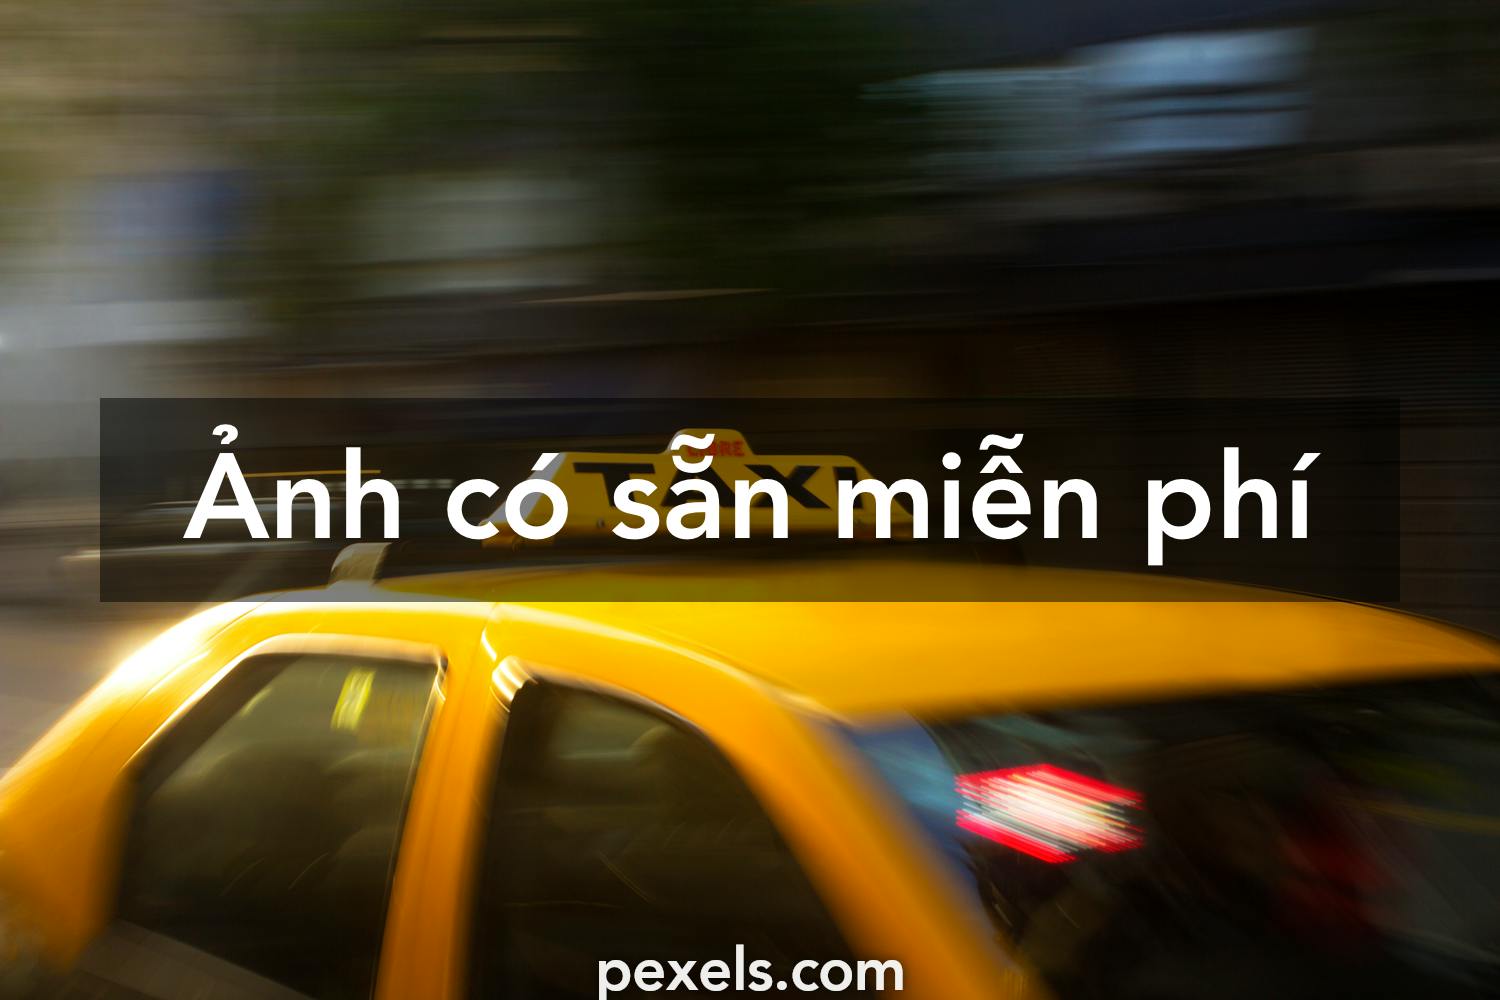 1.000+ ảnh đẹp nhất về Taxi · Tải xuống miễn phí 100% · Ảnh có sẵn ...